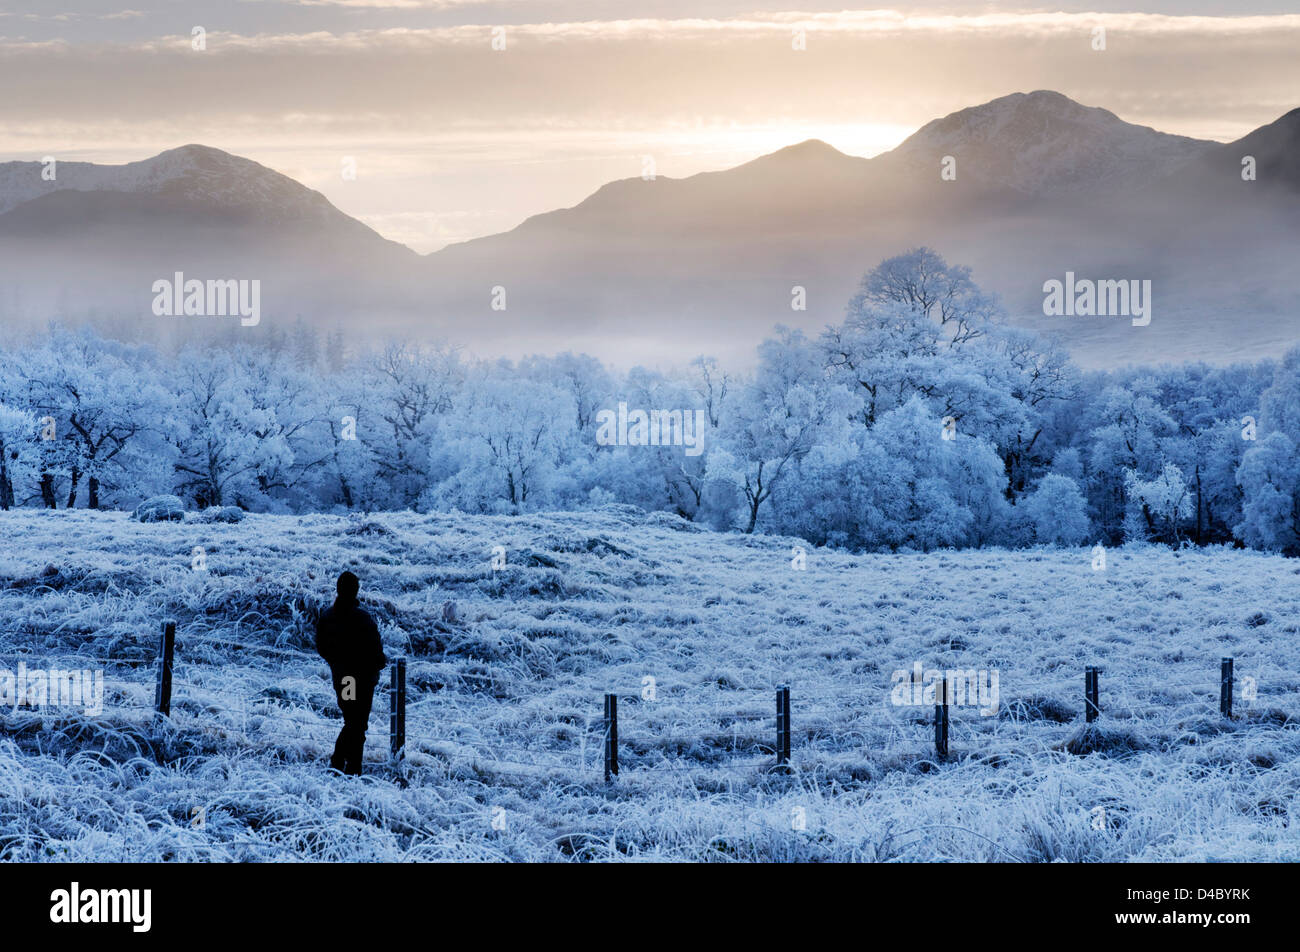 Une personne à admirer la météo glaciale à Glenfinnan dans les Highlands écossais Banque D'Images